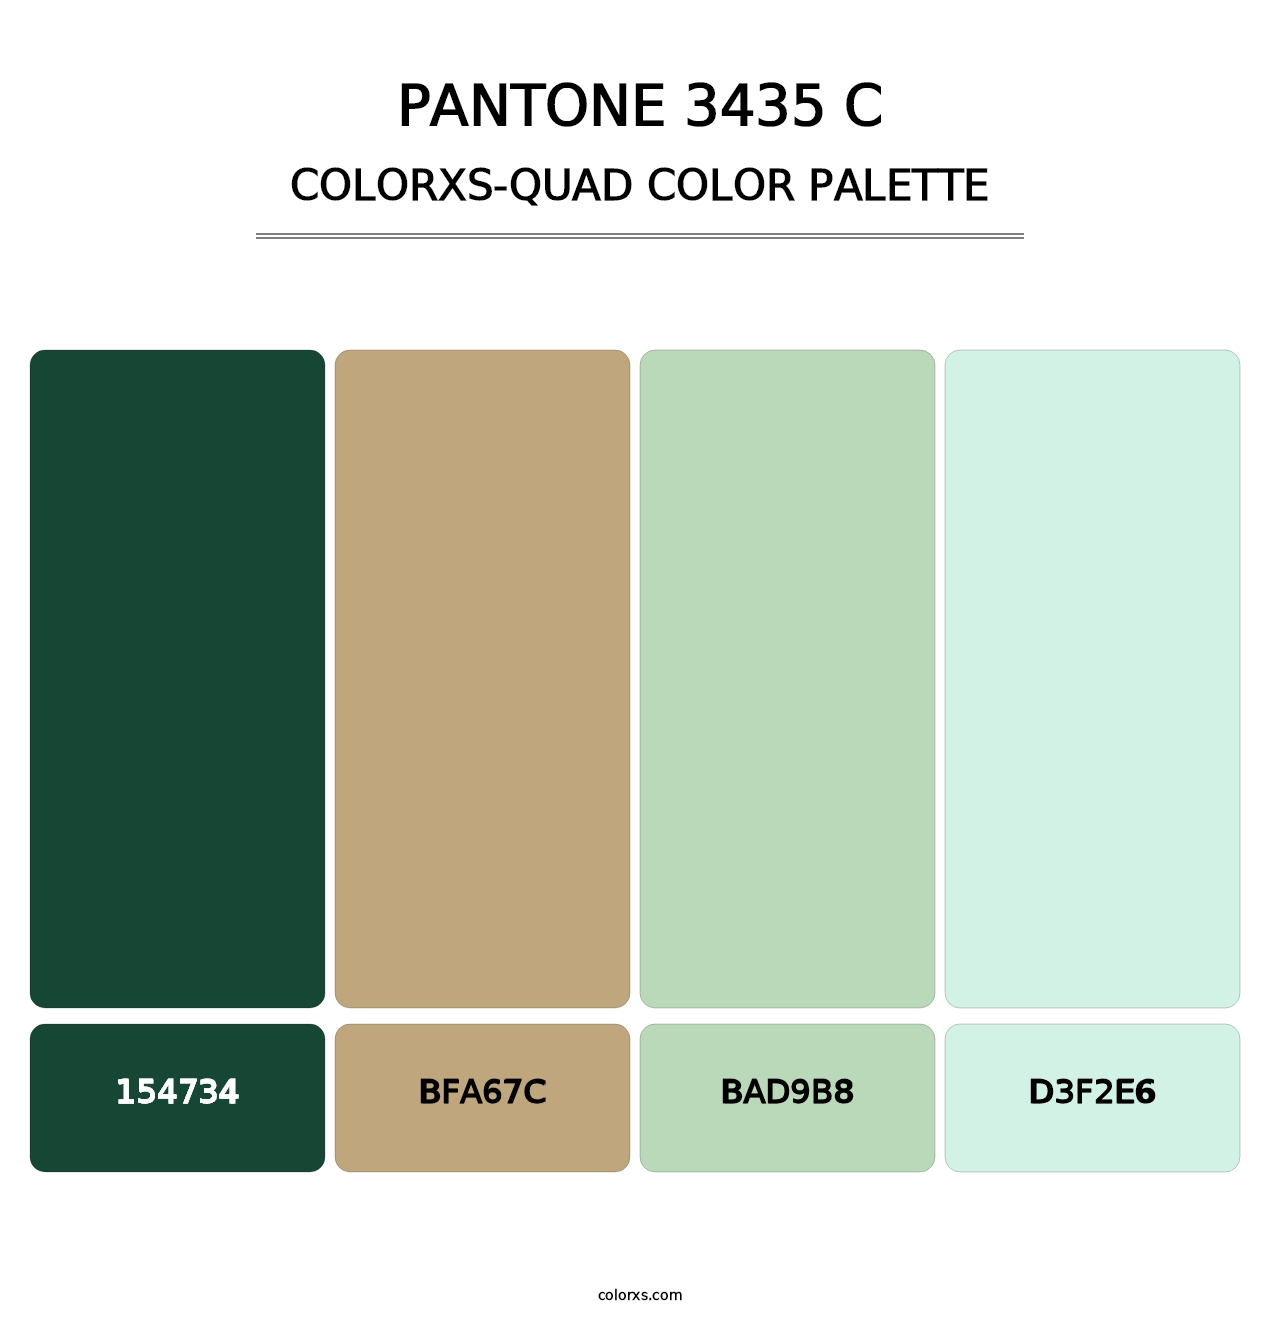 PANTONE 3435 C - Colorxs Quad Palette